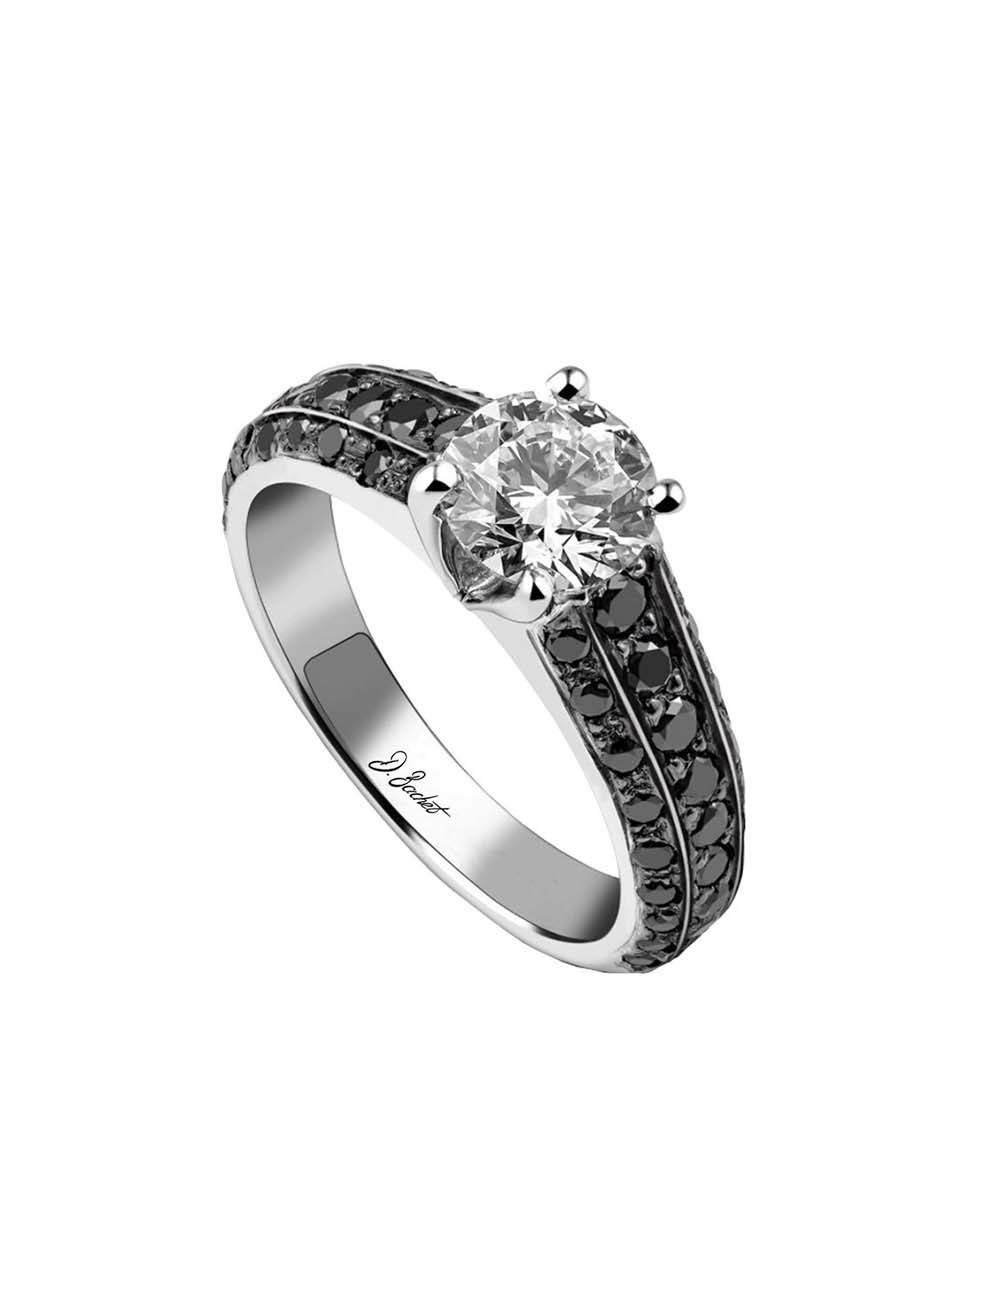 Bague solitaire luxe pour femme en platine, un diamant blanc de 0.80 carat et diamants noirs